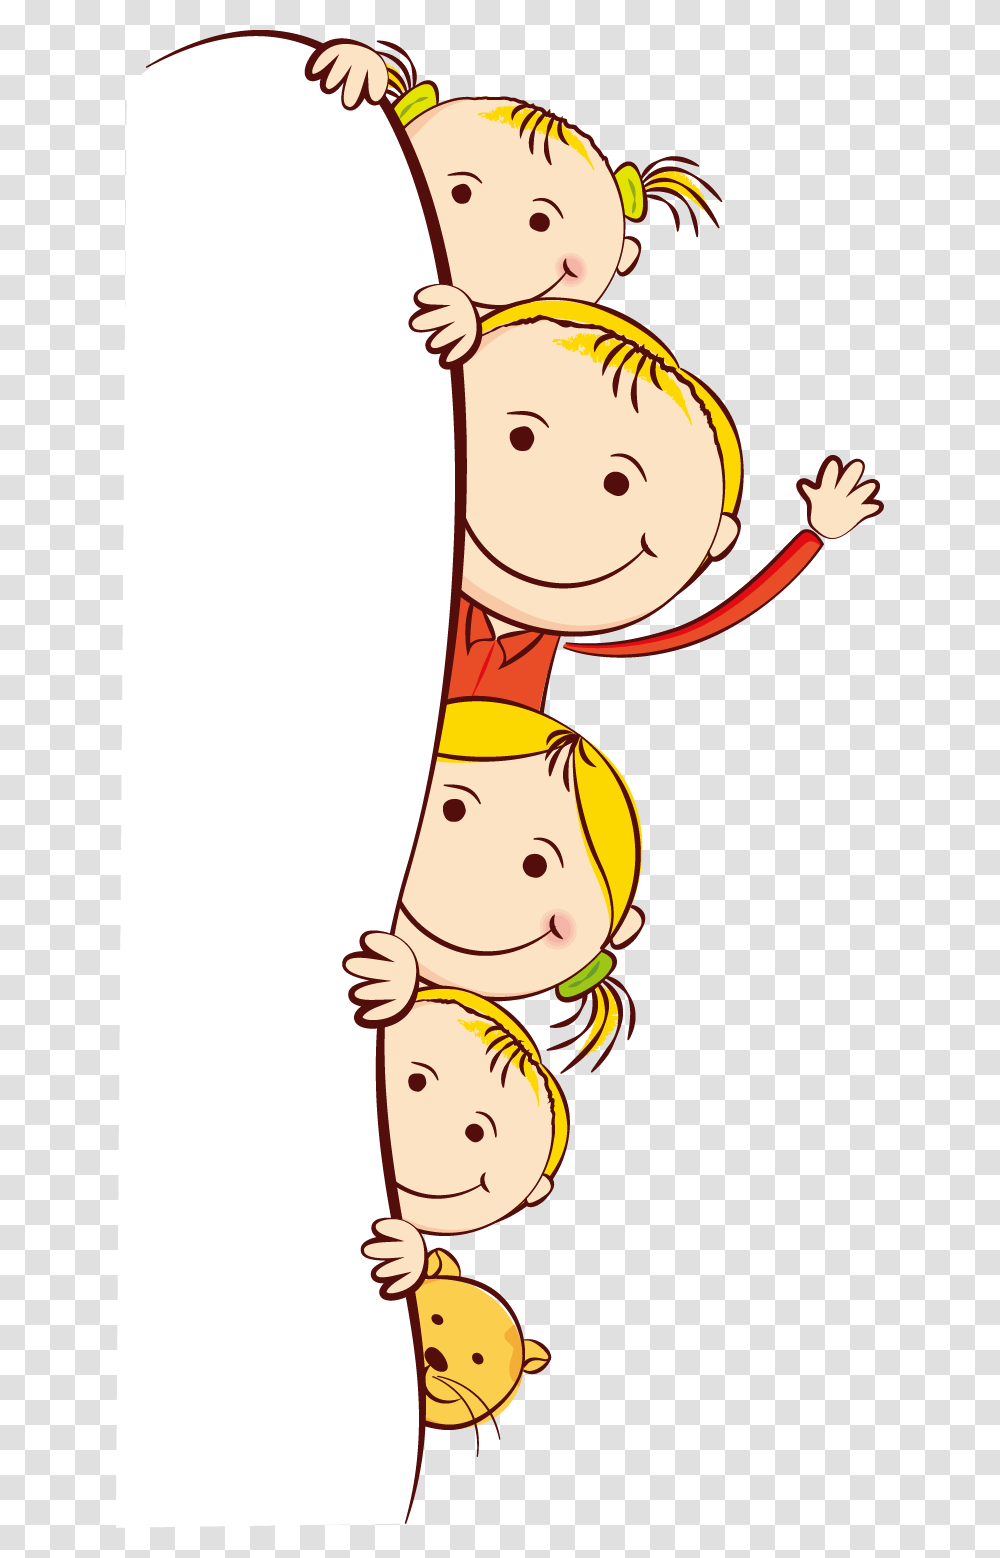 Cute Frame Kids Cartoon Child Free Clipart Hd Kids Cartoon, Face, Finger, Snowman, Leisure Activities Transparent Png